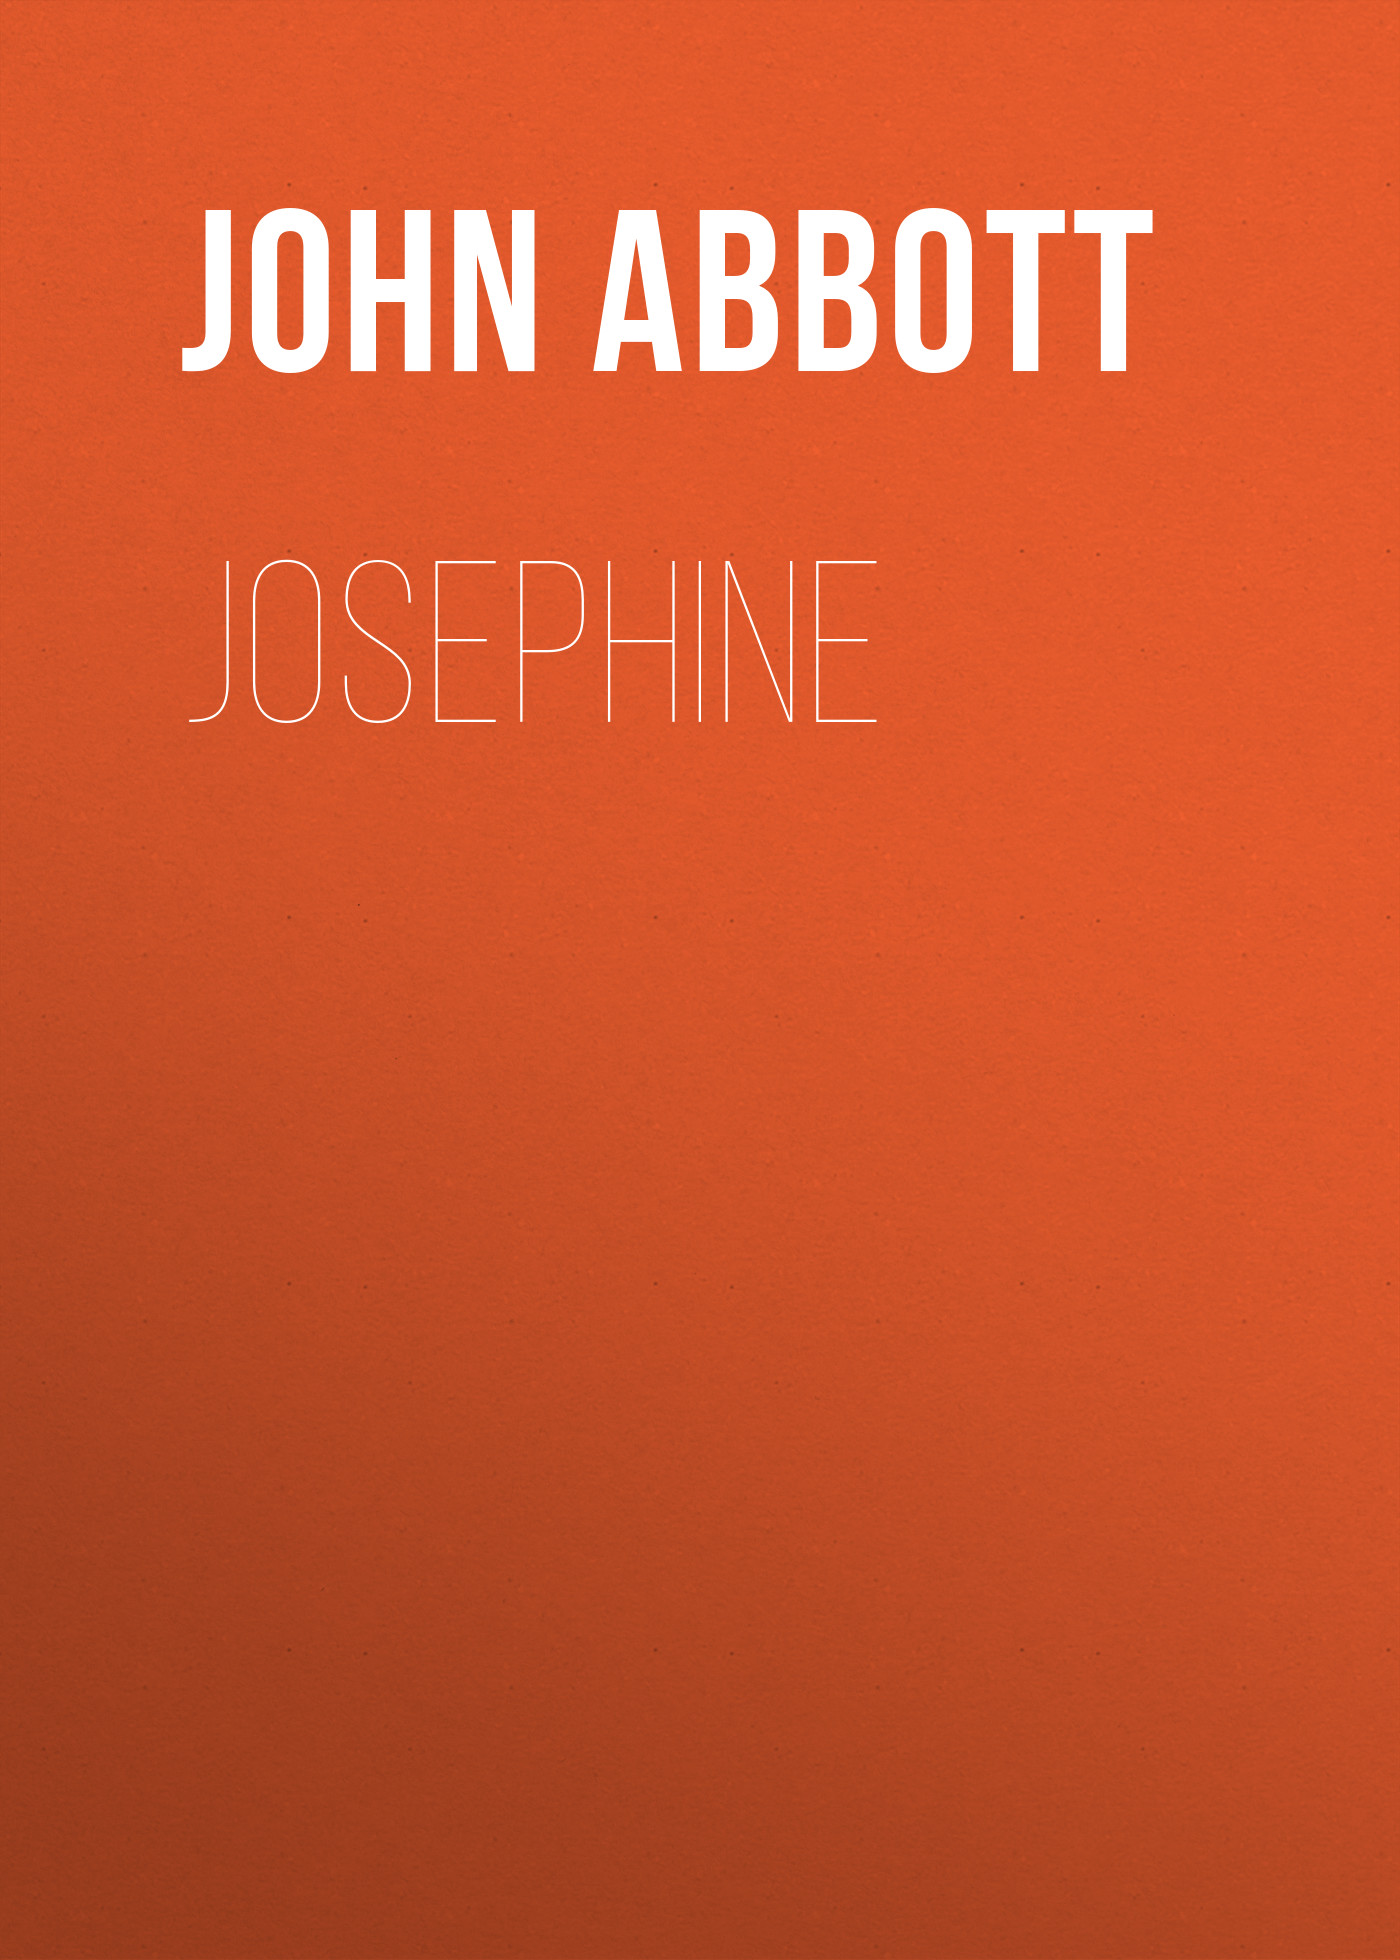 Книга Josephine из серии , созданная John Abbott, может относится к жанру Зарубежная старинная литература, Зарубежная классика, Историческая литература. Стоимость электронной книги Josephine с идентификатором 24174212 составляет 5.99 руб.